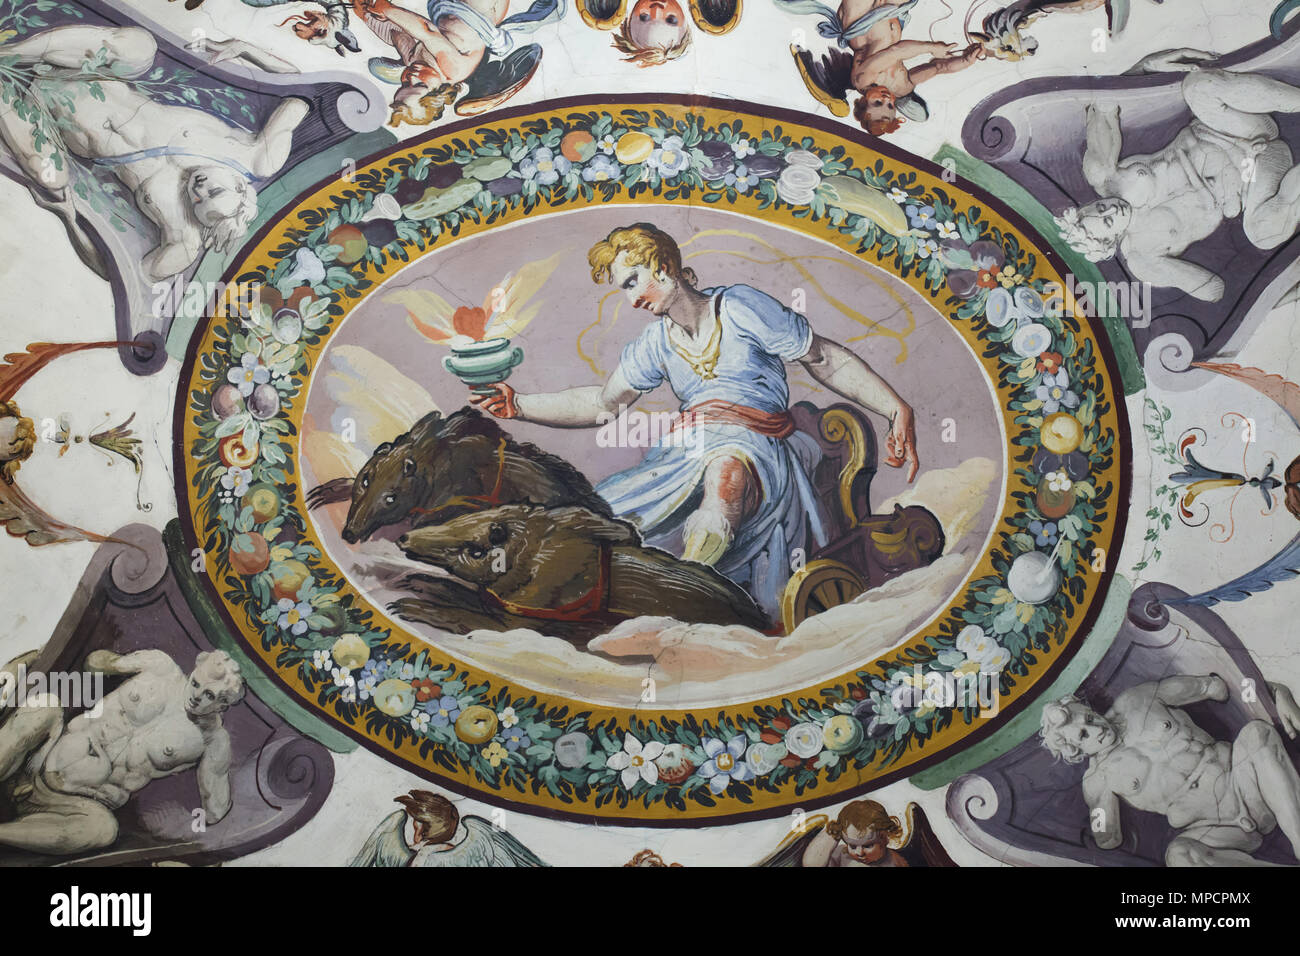 Admetus auf dem Wagen durch Wildschweine gezeichnet. Deckenfresko im Vasari Korridor in den Uffizien (Galleria degli Uffizi) in Florenz, Toskana, Italien. Stockfoto